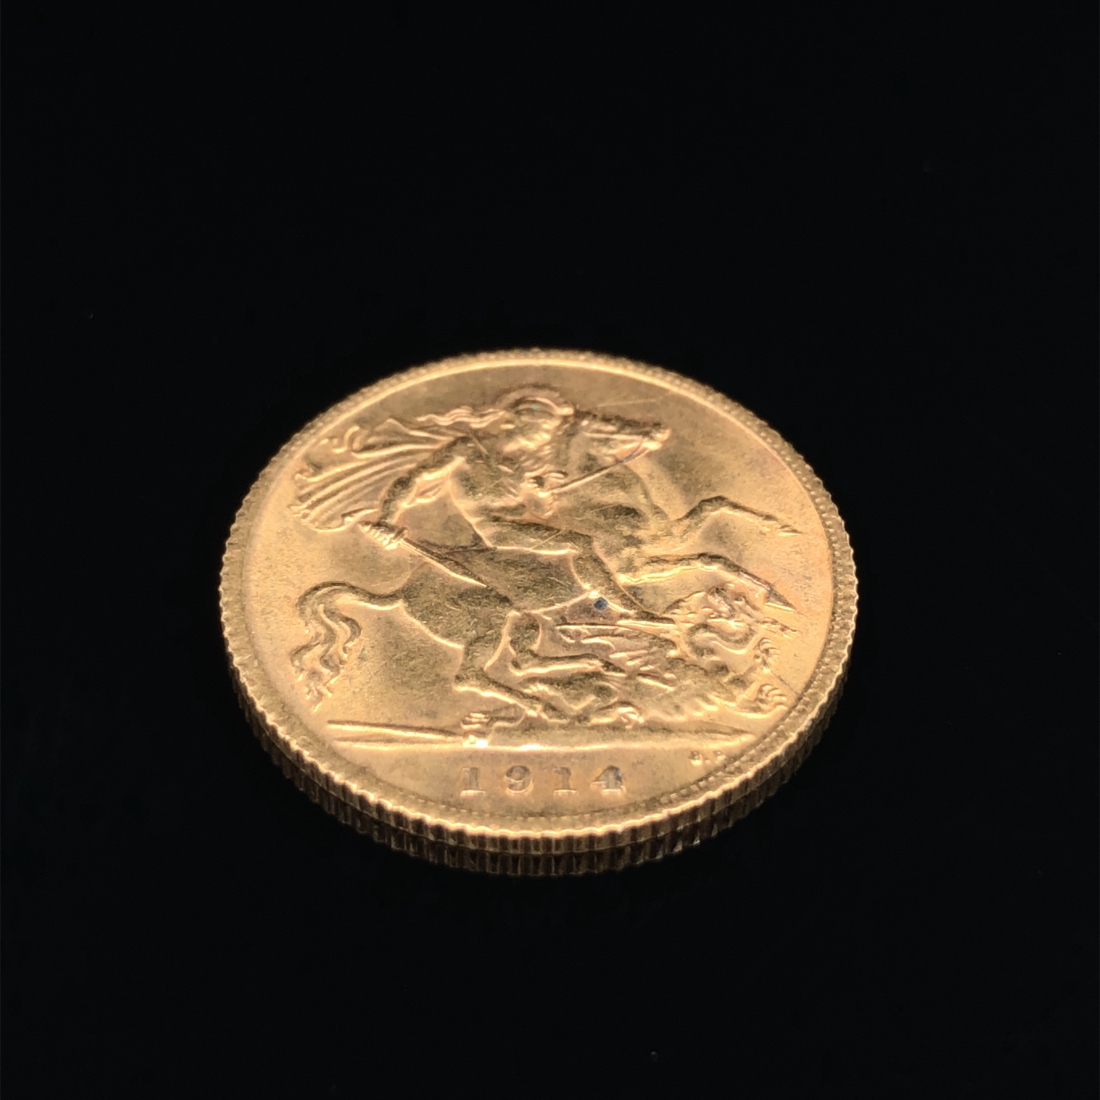 A 22ct GOLD 1914 HALF SOVEREIGN COIN.